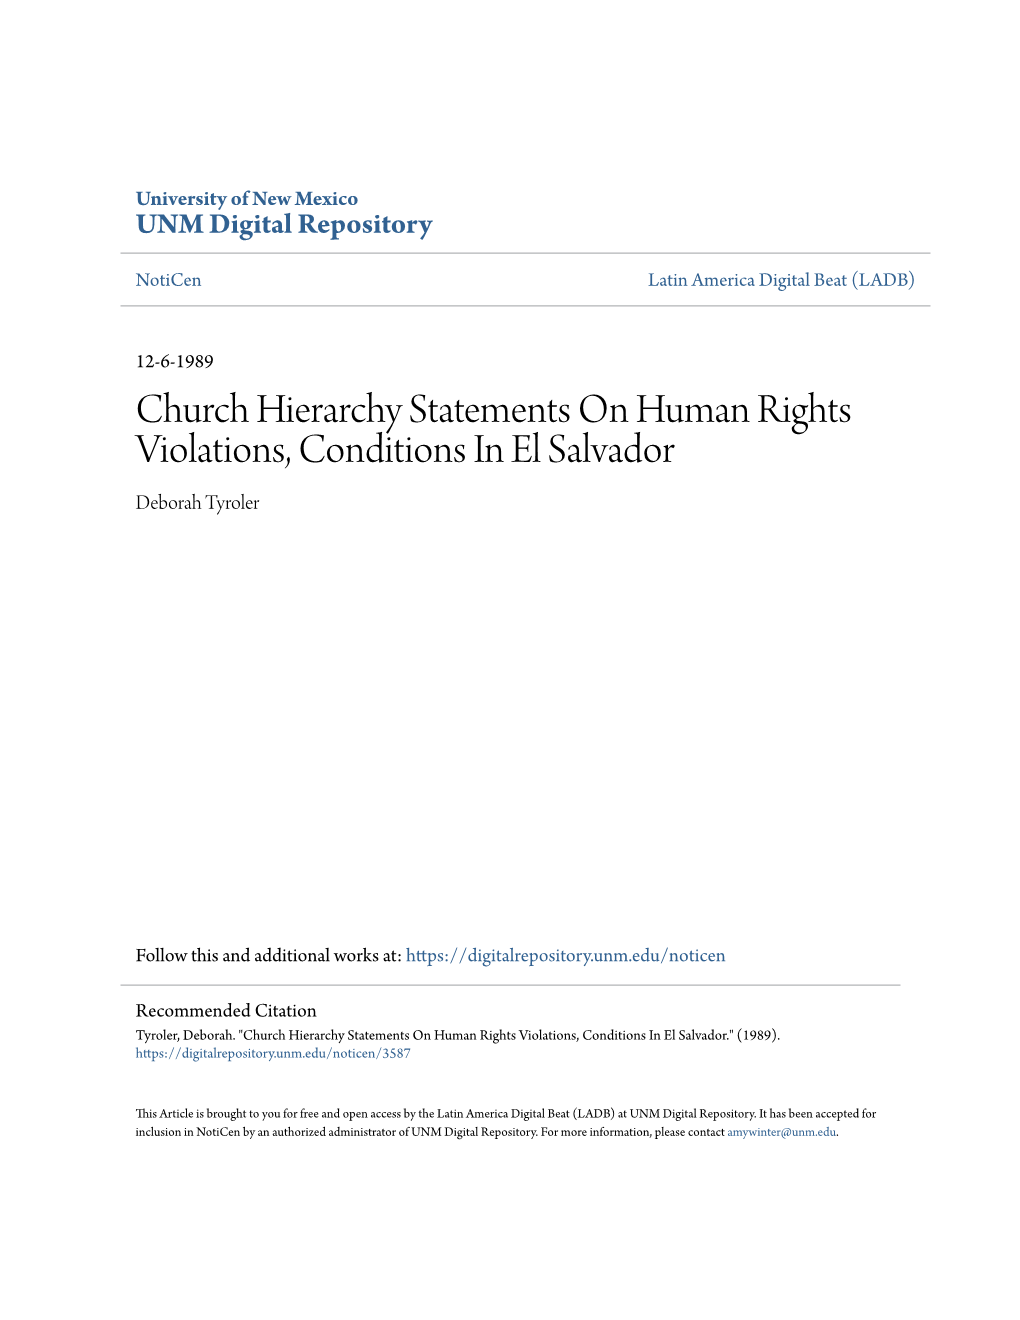 Church Hierarchy Statements on Human Rights Violations, Conditions in El Salvador Deborah Tyroler